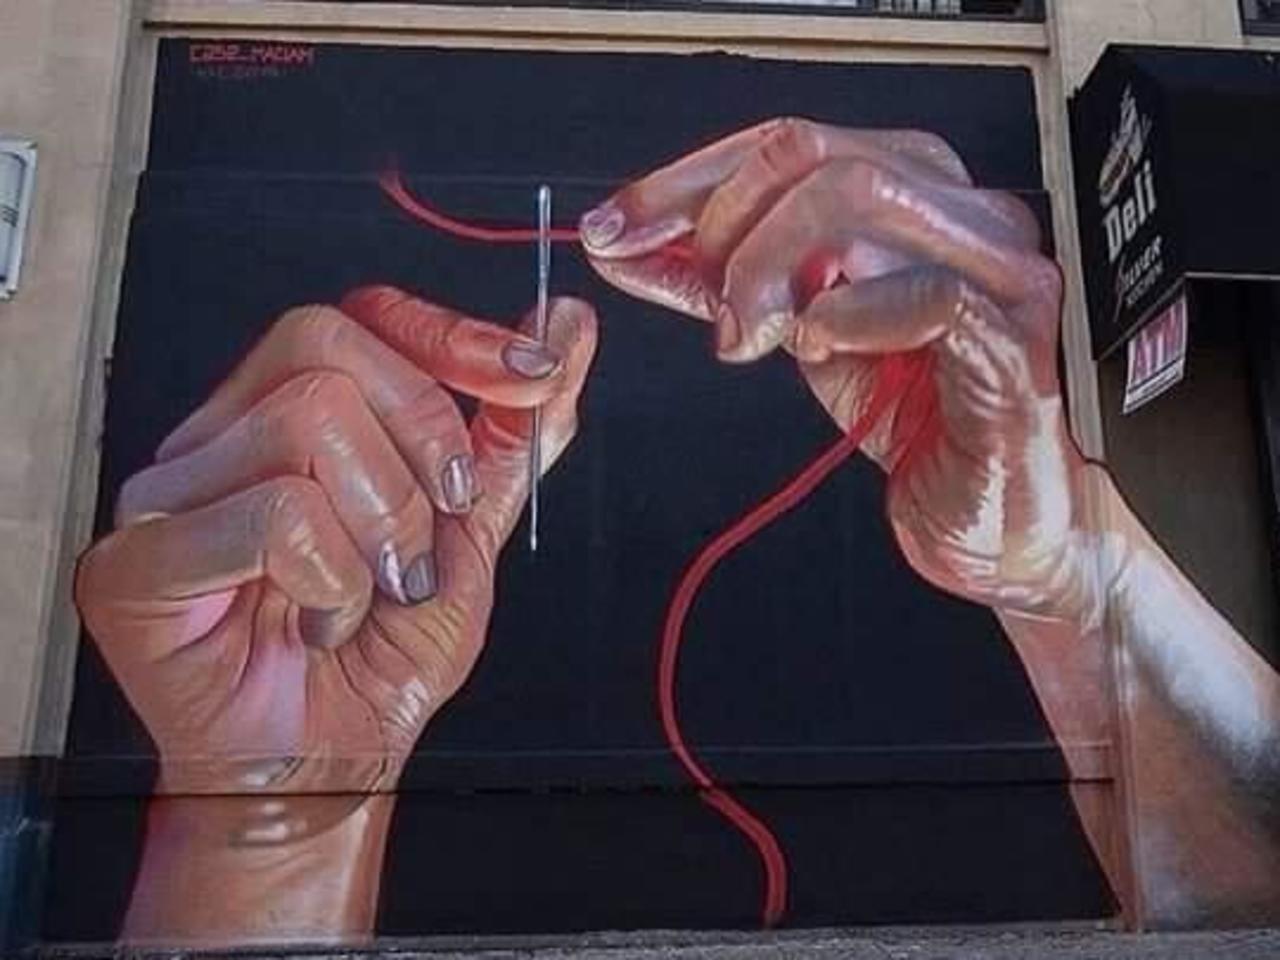 #art #streetart #graffiti 
#CaseMaclaim https://t.co/z1wjT0bLV0